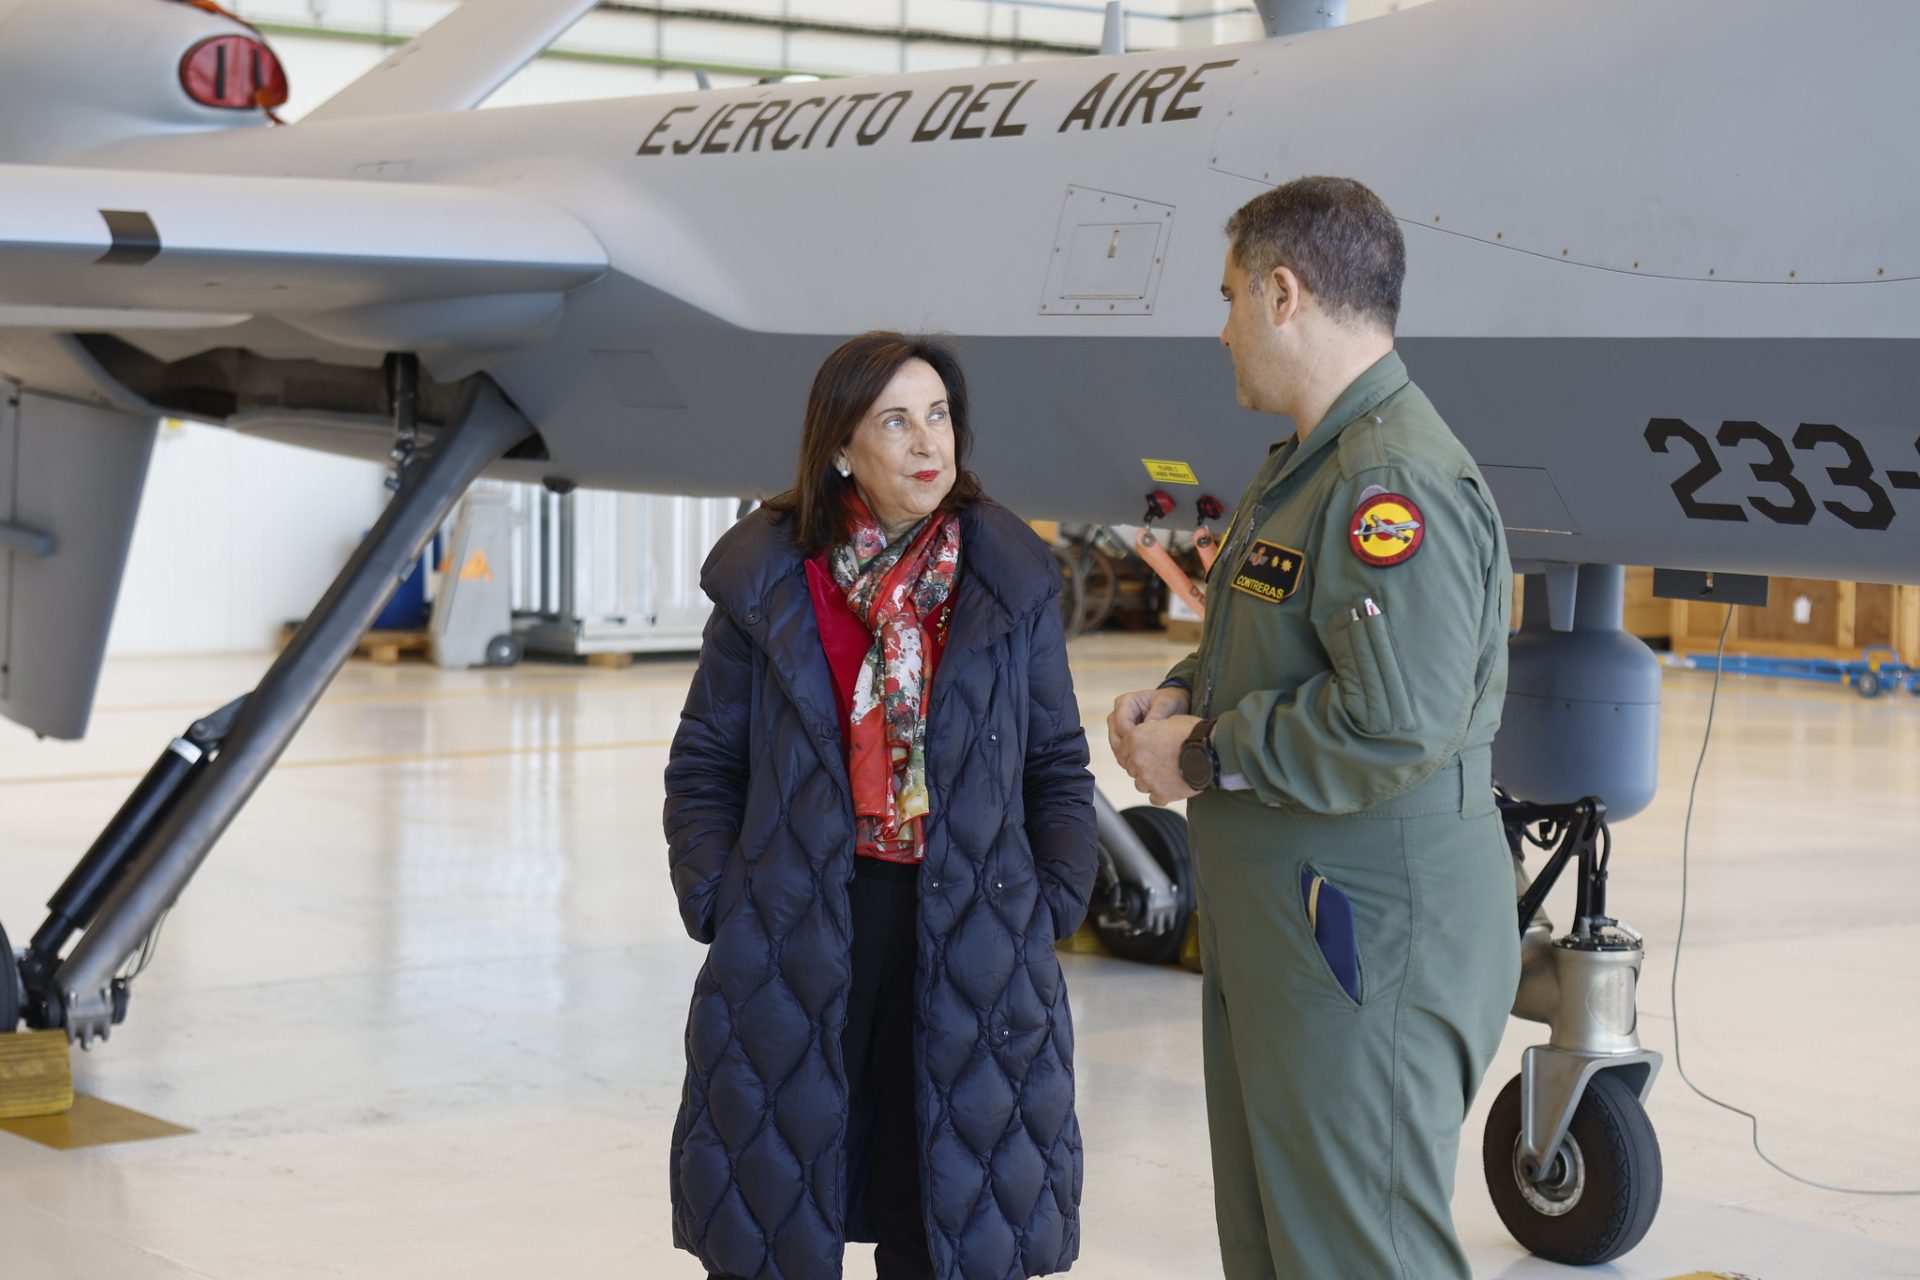 La ministra de Defensa, Margarita Robles, visita el Ala 23, escuela militar de Caza y Ataque del Ejército del Aire y del Espacio, ubicada en la base de Talavera la Real (Badajoz)